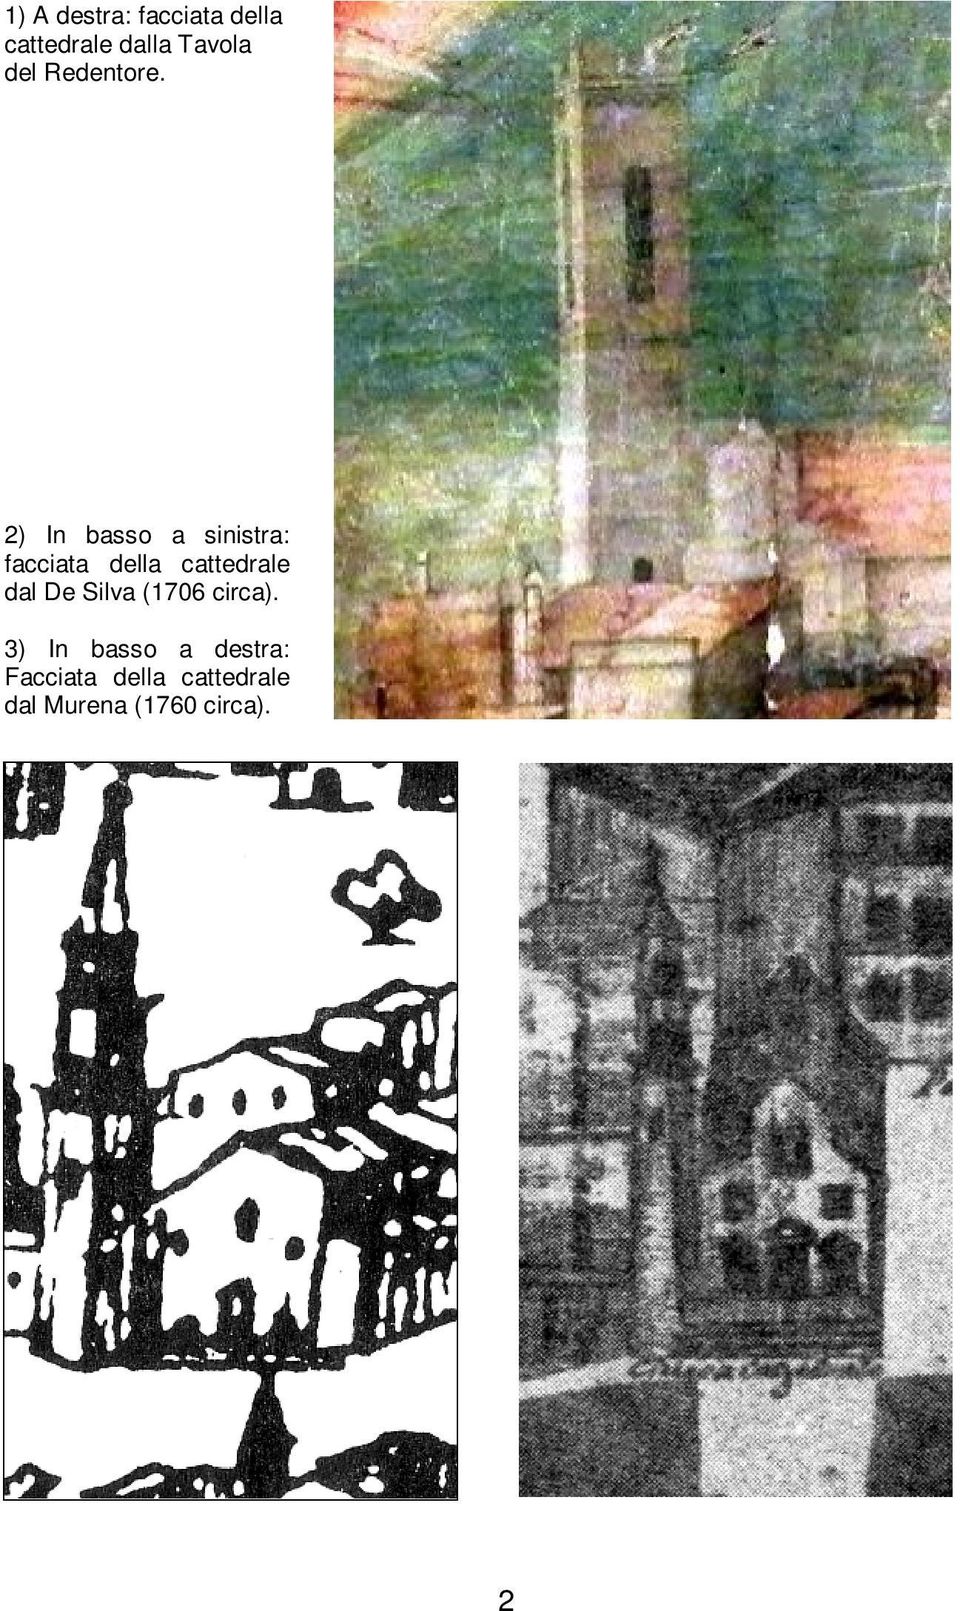 2) In basso a sinistra: facciata della cattedrale dal